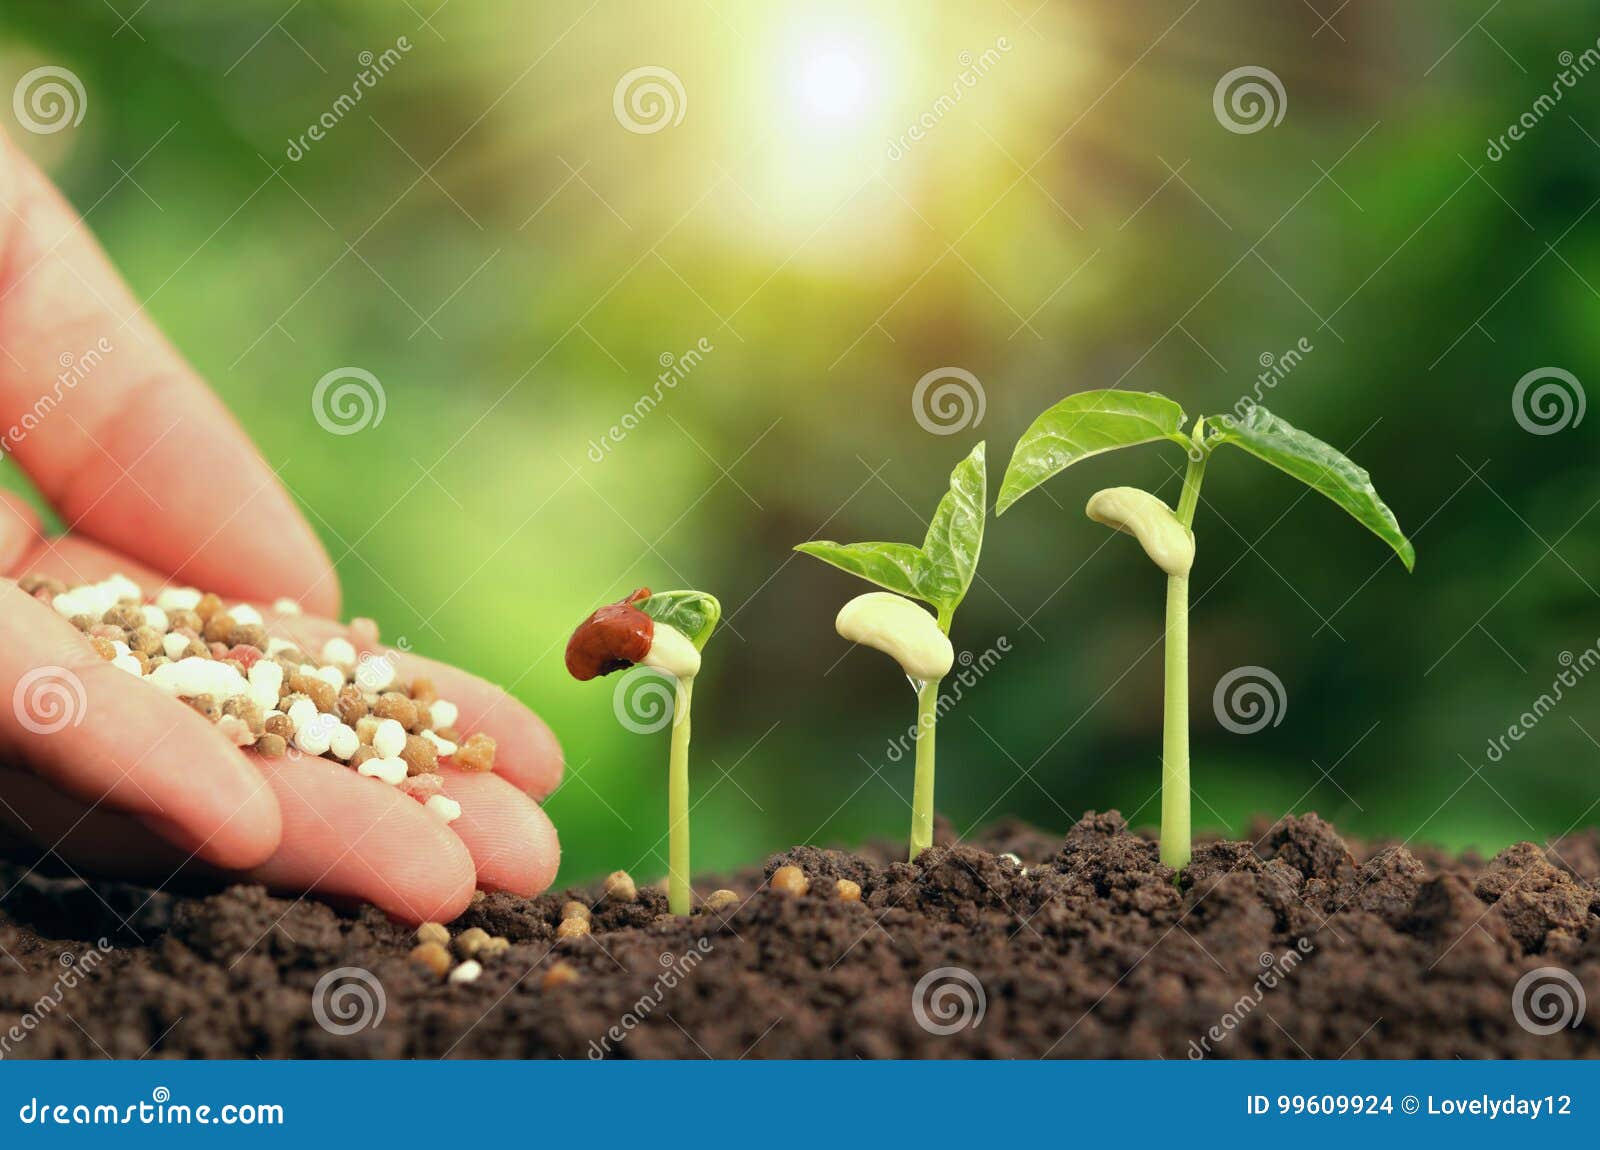 agricultural hand nurturing fertilizer plant growing step on soil in garden